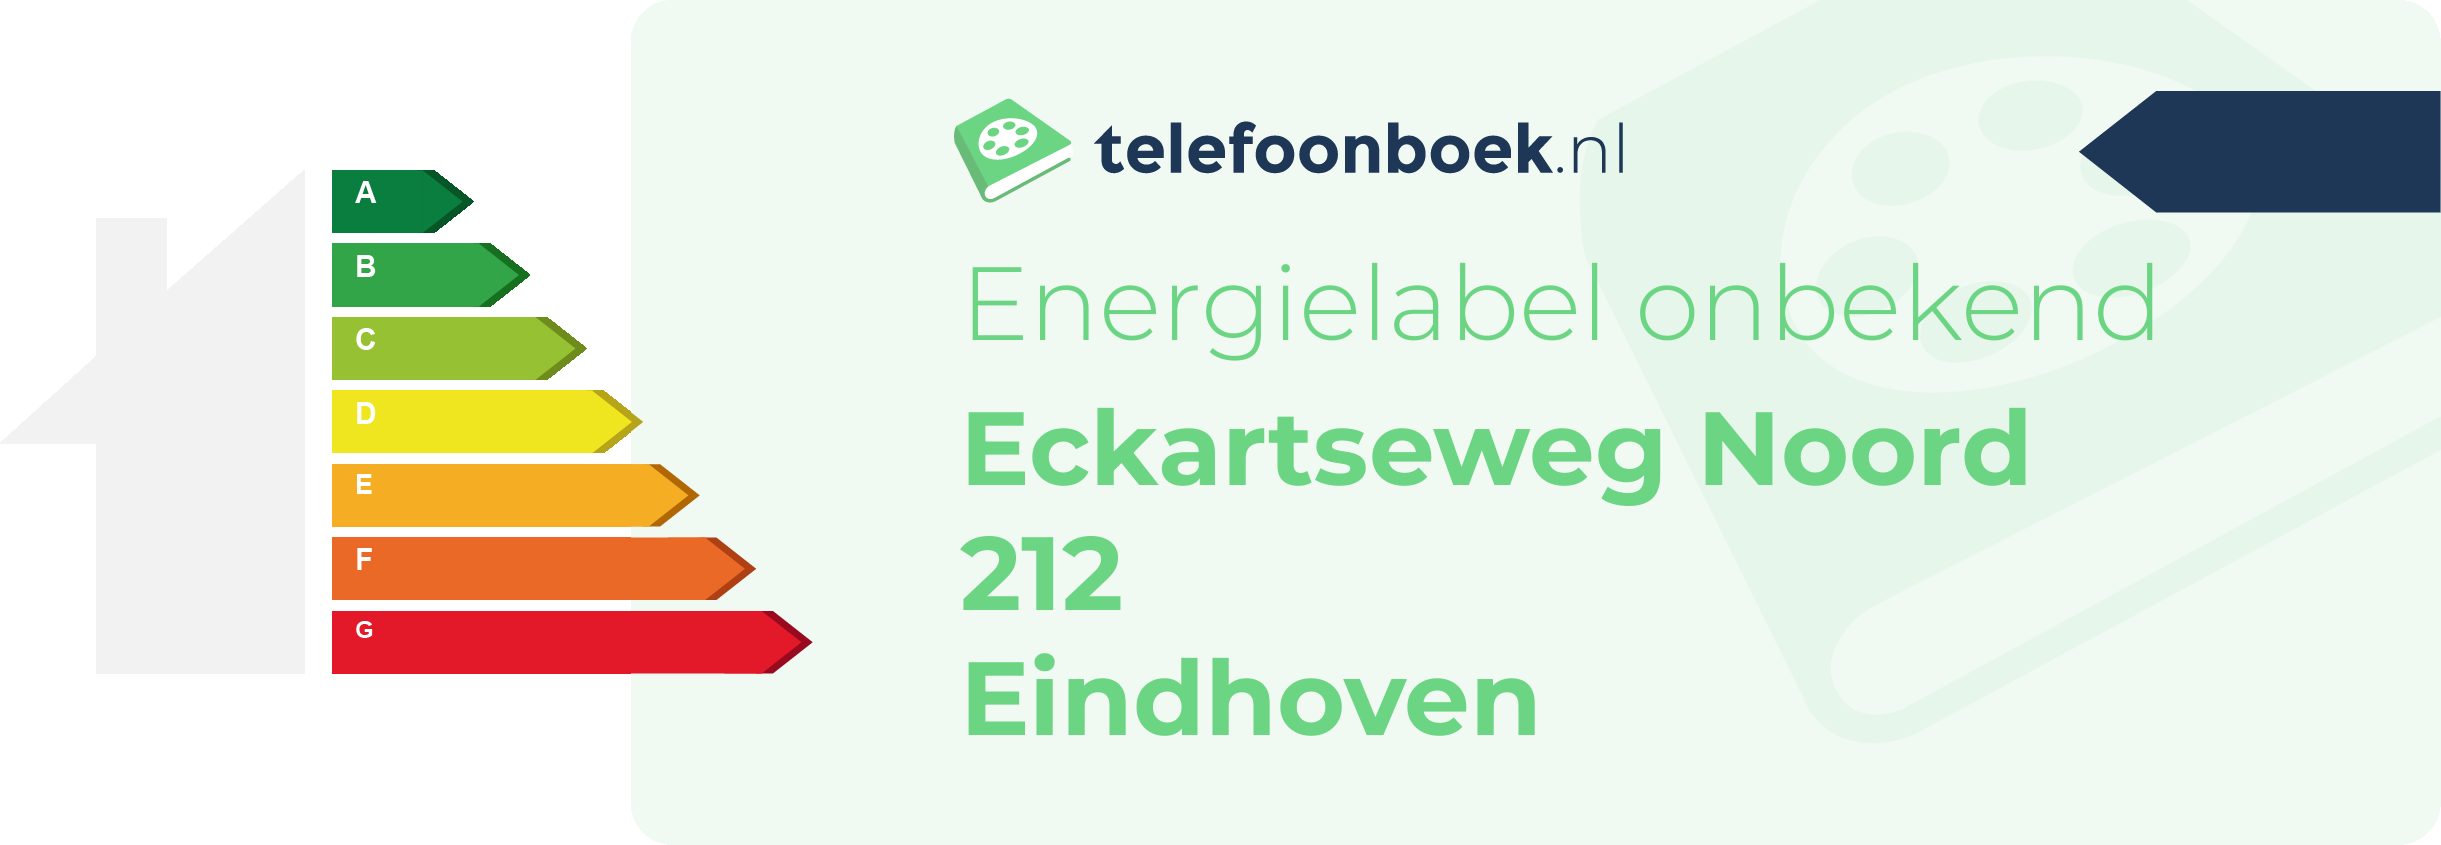 Energielabel Eckartseweg Noord 212 Eindhoven